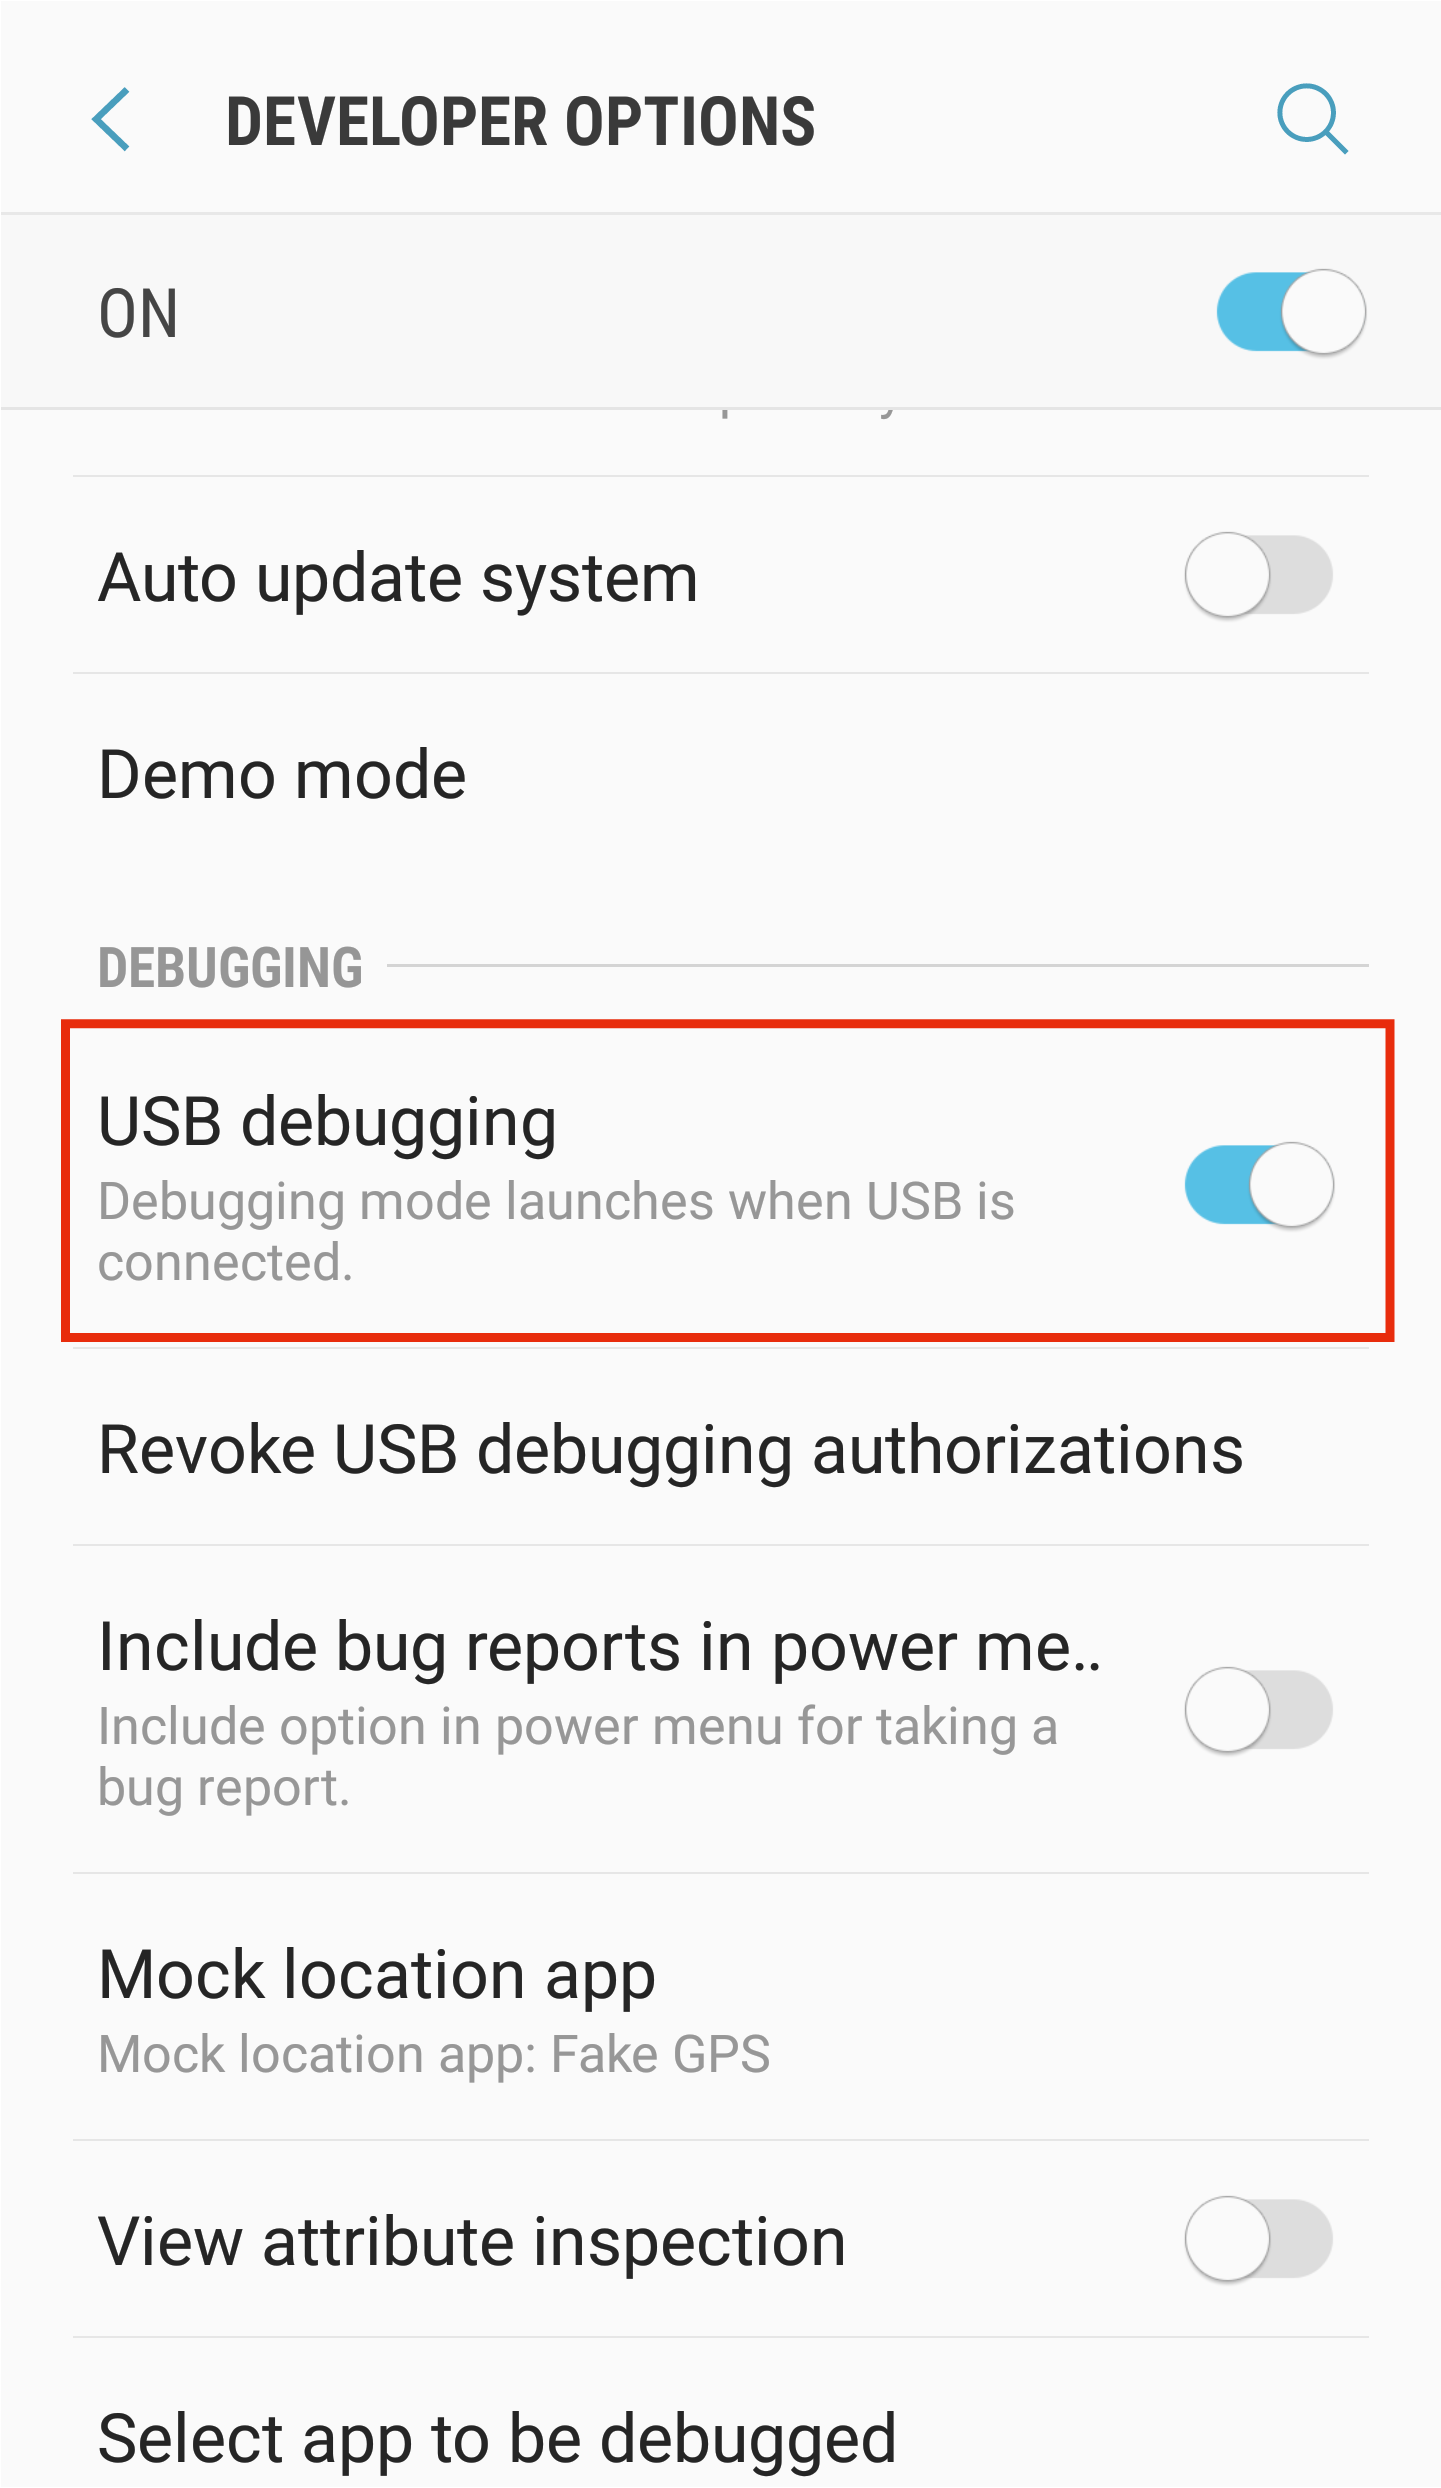 Enable USB Debugging